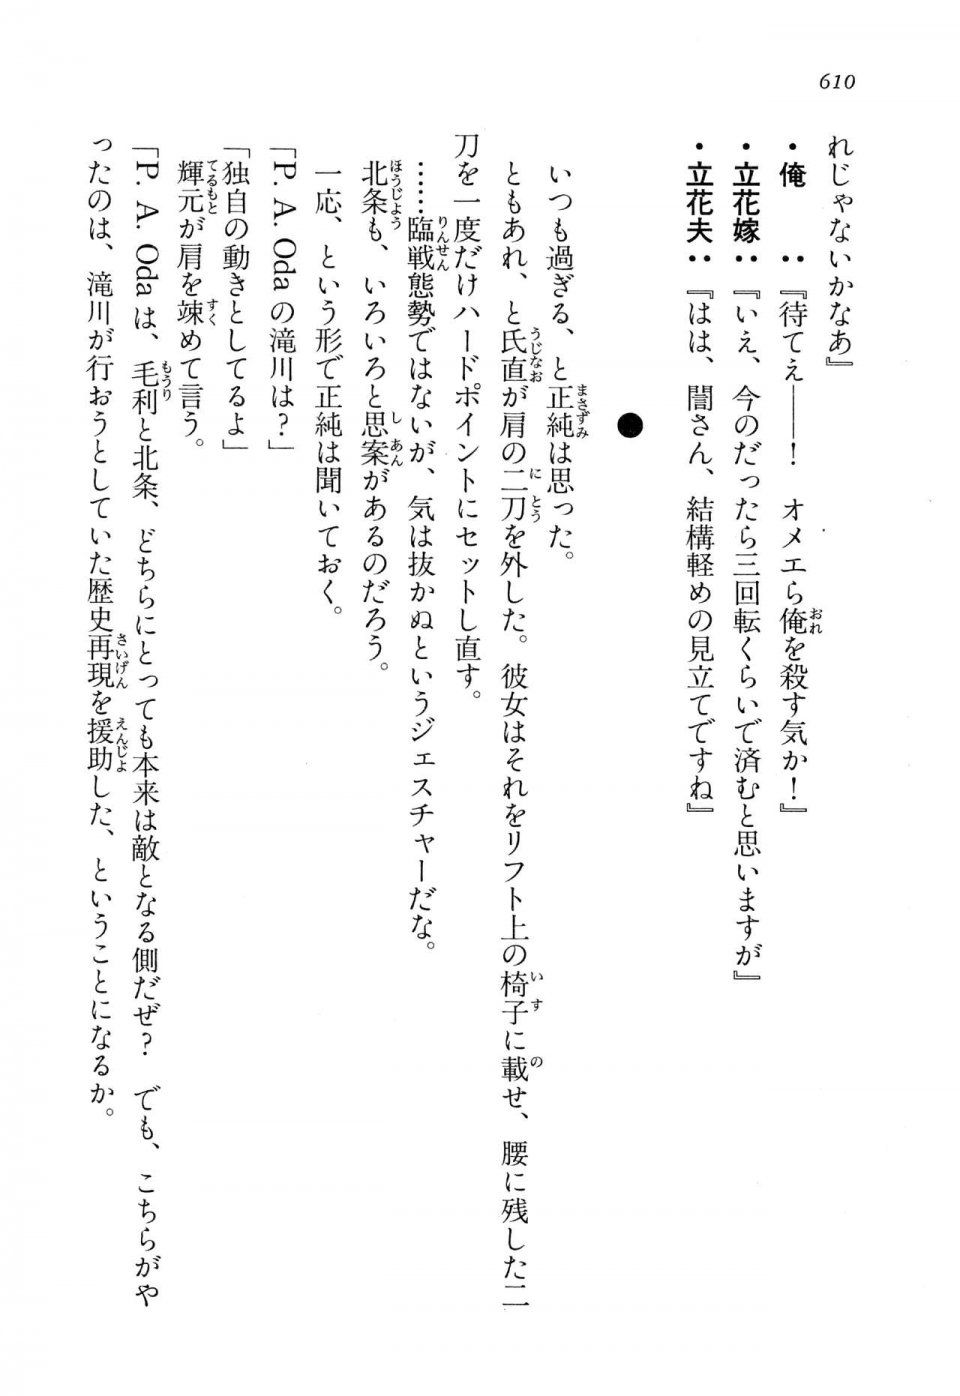 Kyoukai Senjou no Horizon LN Vol 13(6A) - Photo #610